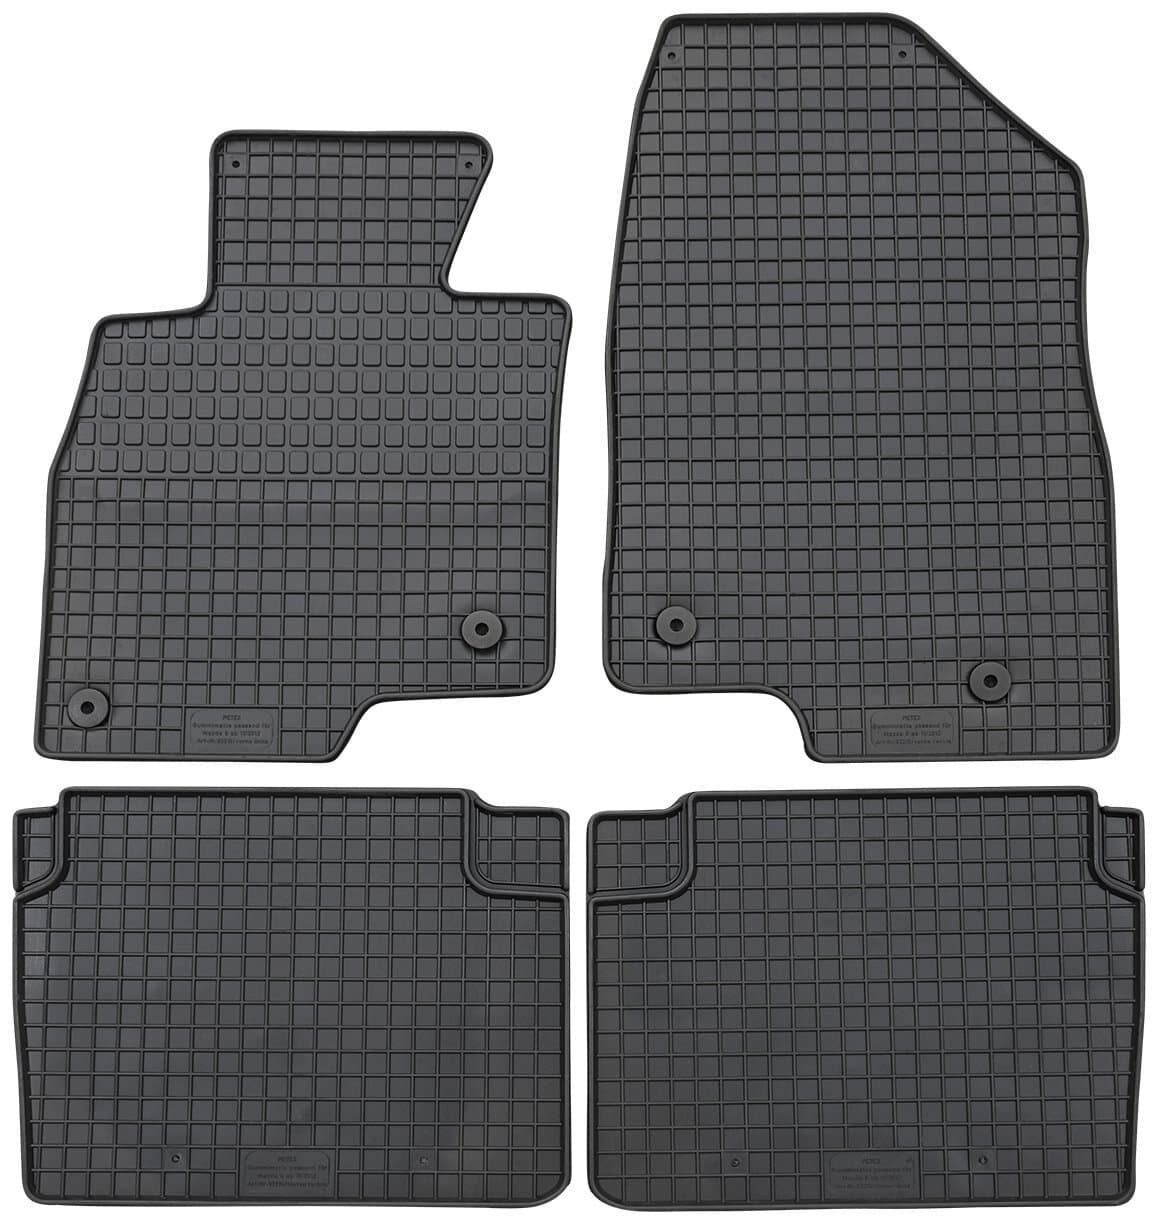 Gummimatten+Kofferraum-Schalenmatte für Mazda 6 Kombi ab 11/2012